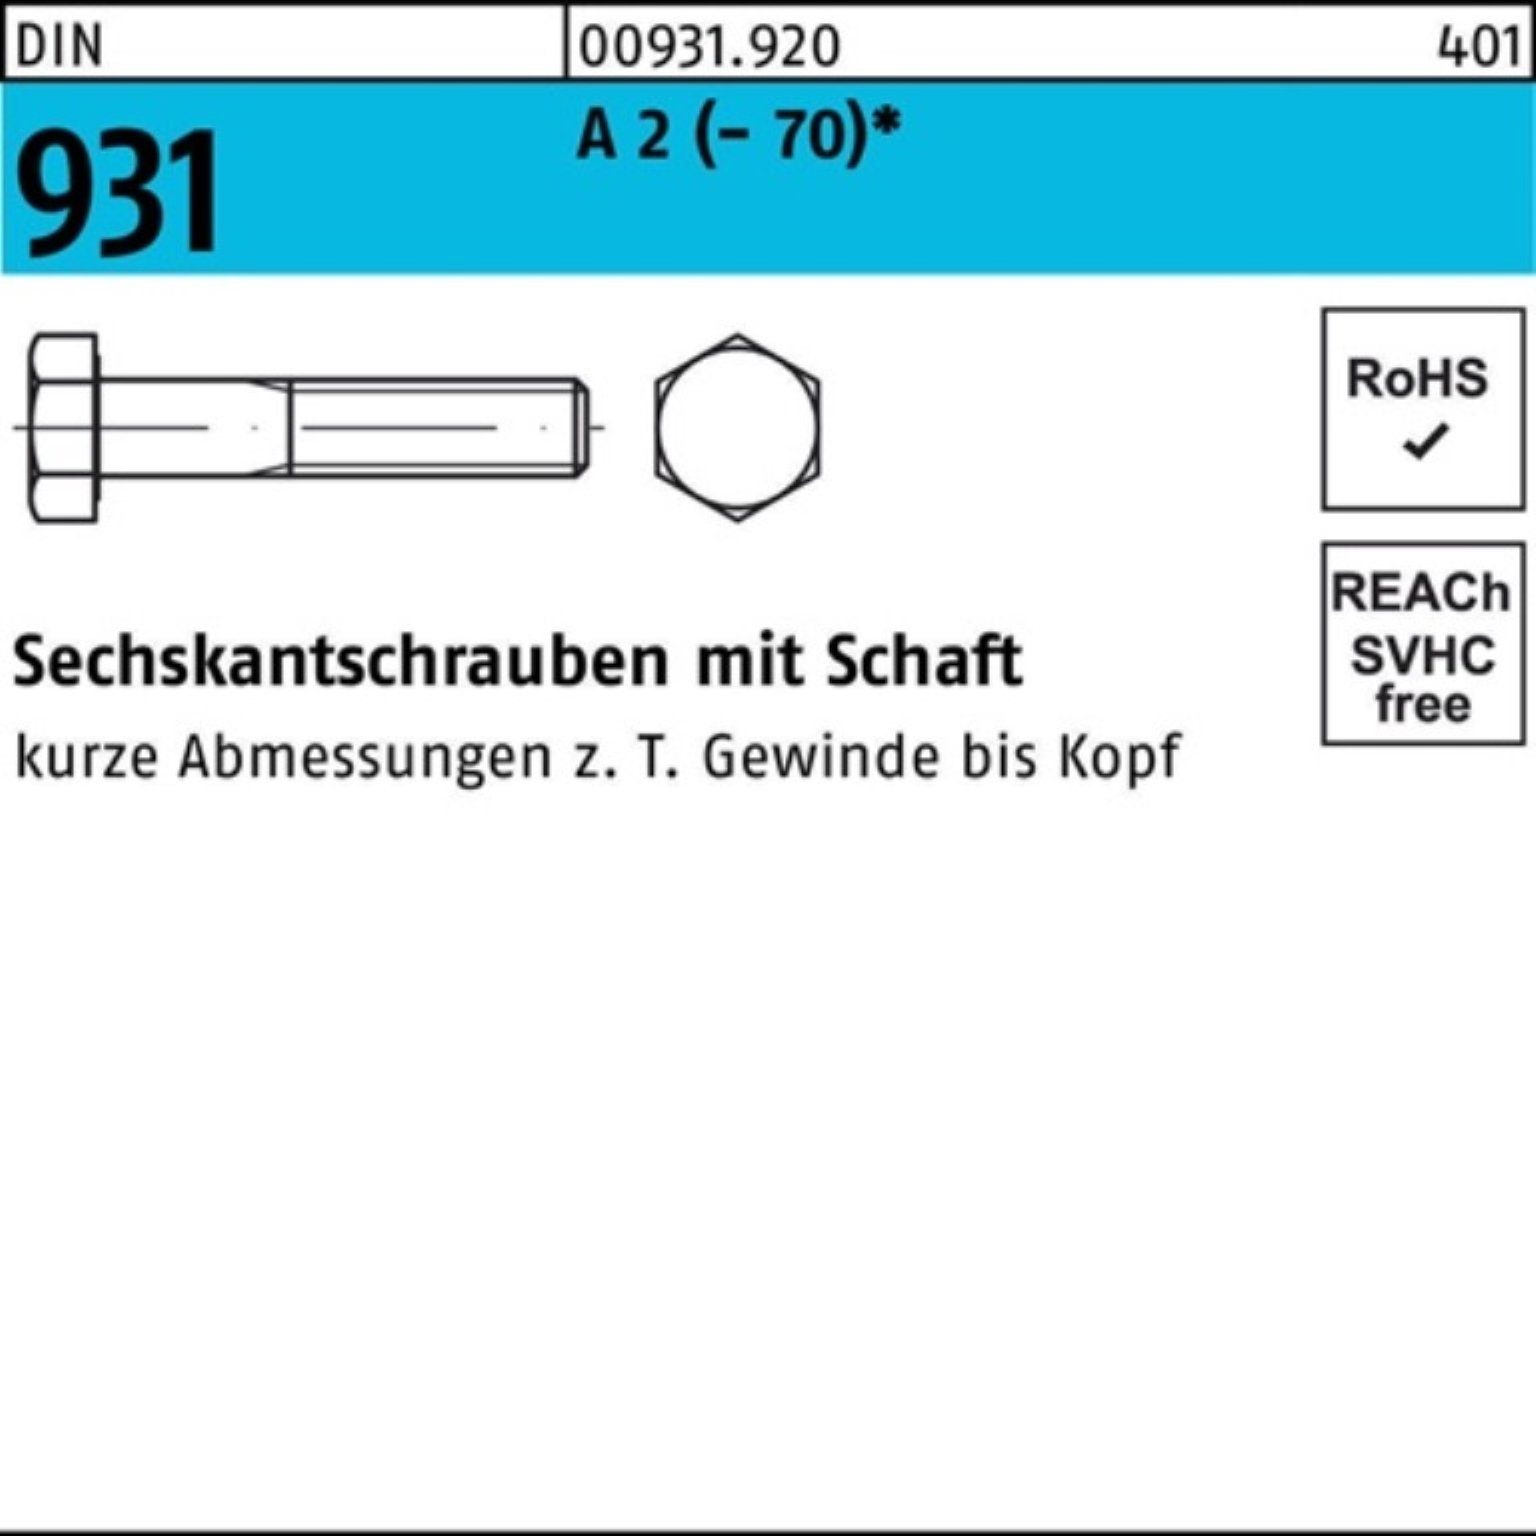 Top-Auswahl Reyher Sechskantschraube 100er Pack Sechskantschraube DIN M8x 931 Stü Schaft 2 100 75 A (70)